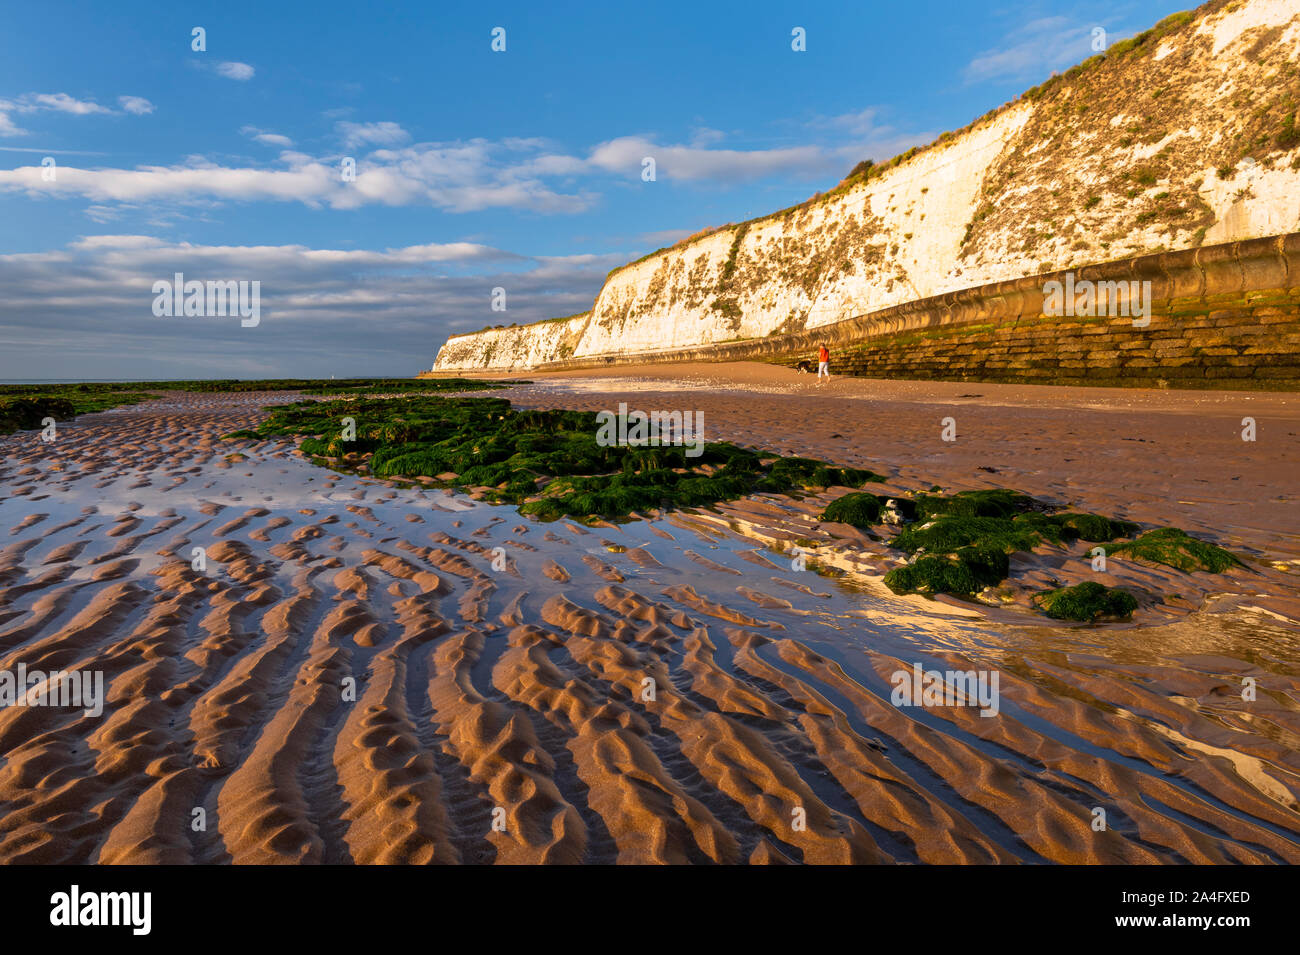 Louisa Bay, Broadstairs. Une famille walker sur une plage de sable à Thanet, dans le Kent. Banque D'Images